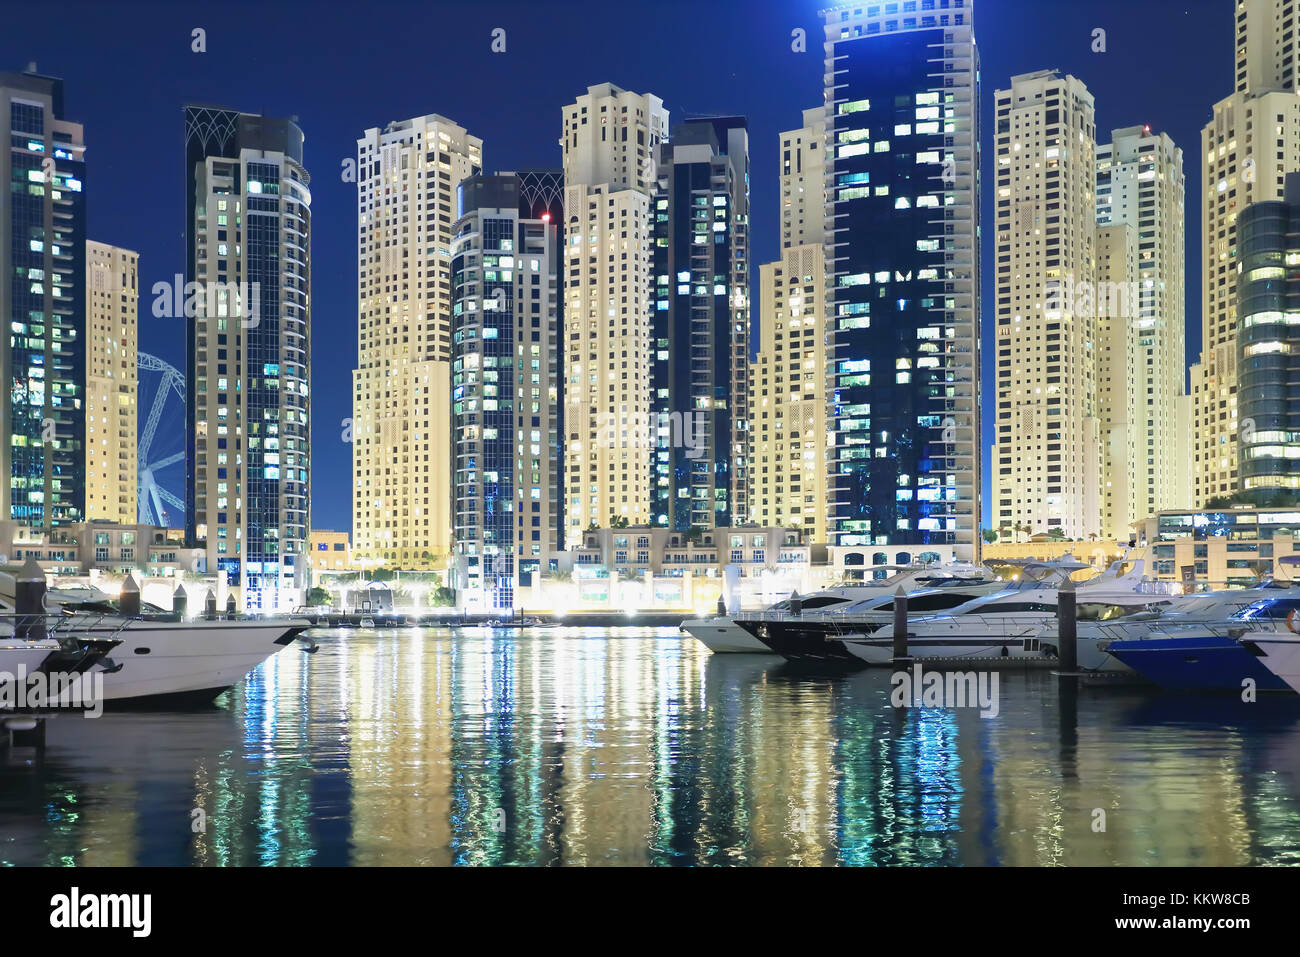 Distrito de Dubai de lujo con yates y rascacielos en la noche. bella iluminación de noche el paisaje urbano de Dubai. Foto de stock